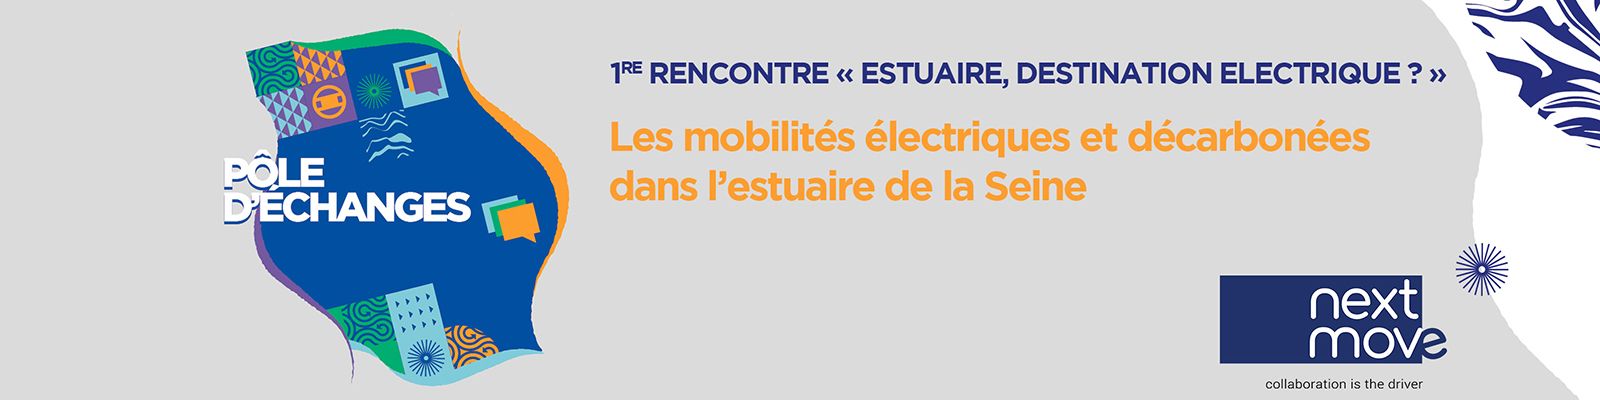 Les mobilités électriques et décarbonées dans l’estuaire de la Seine